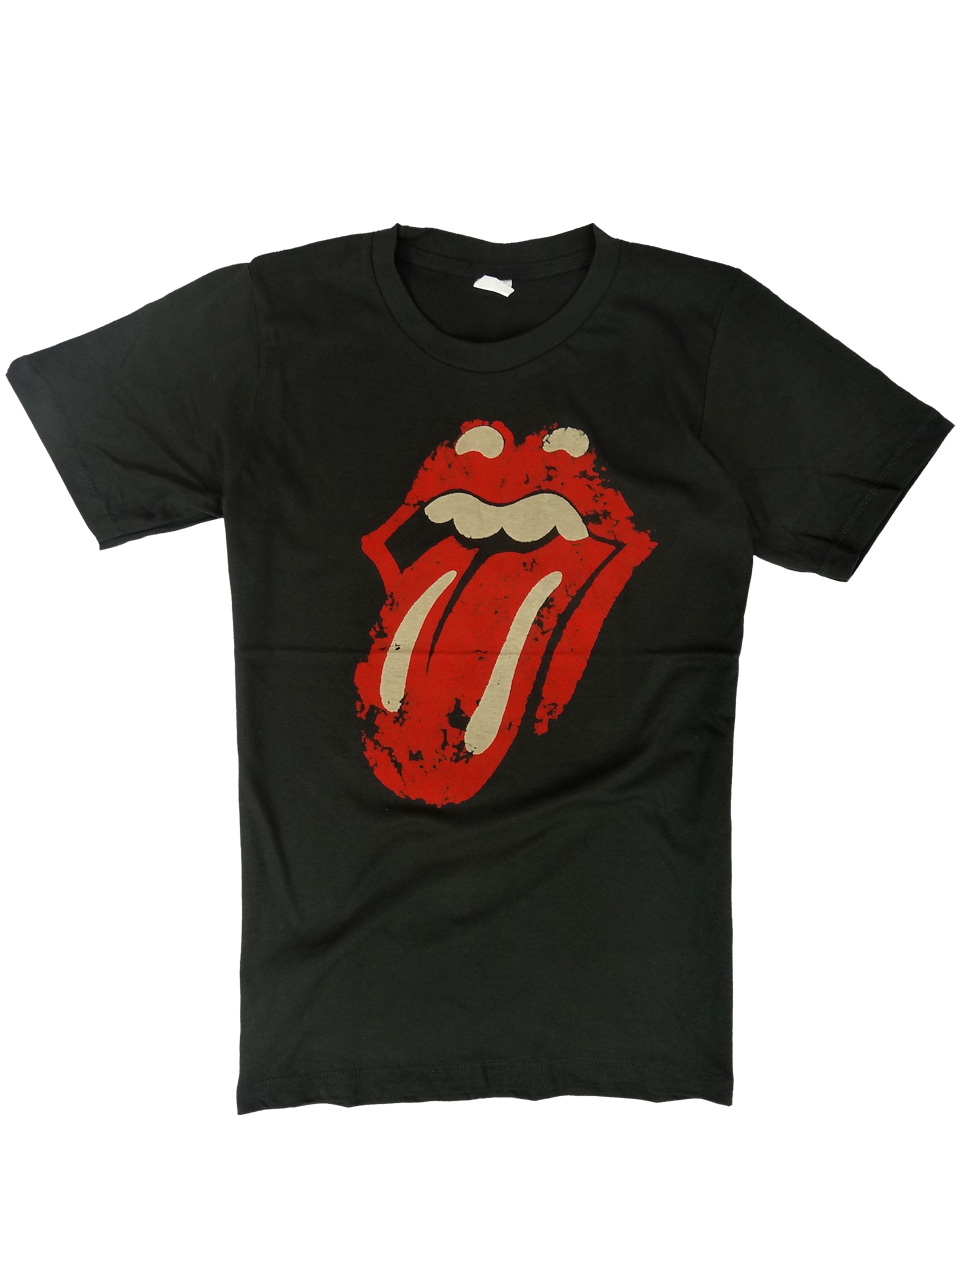 ヴィンテージ風 ロックTシャツ The Rolling Stones ザ ローリングストーンズ 定番唇 brt-0255